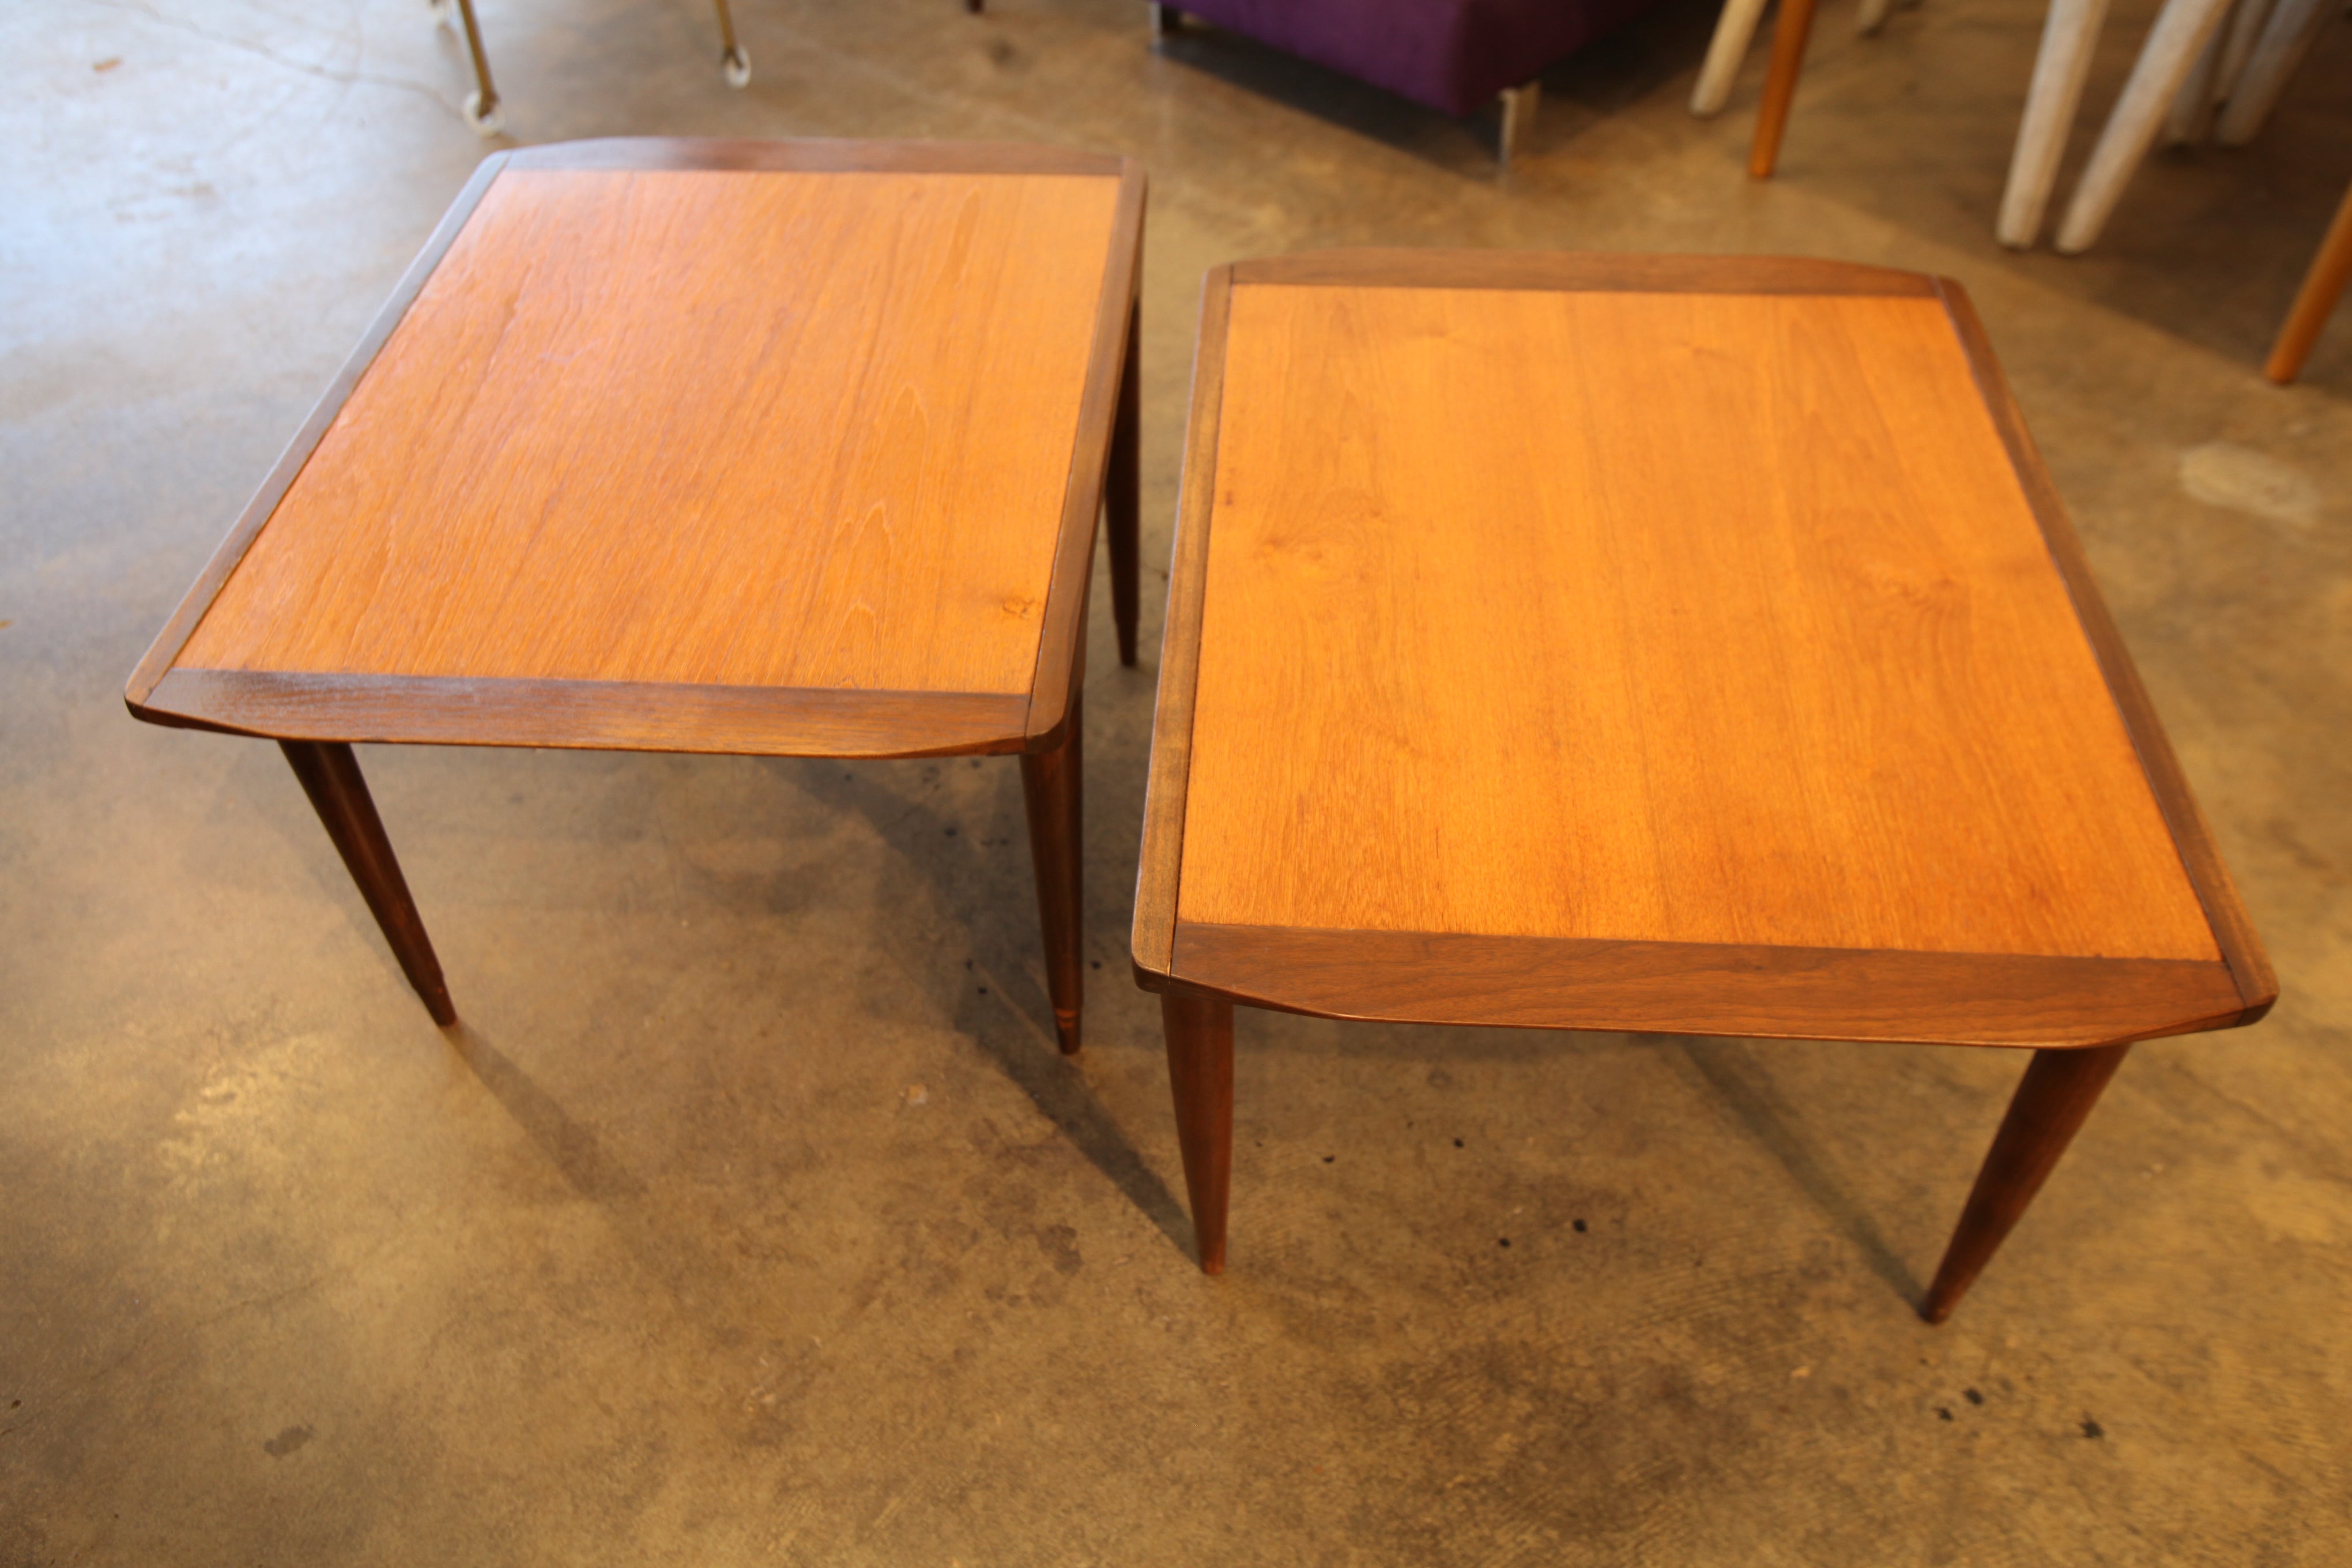 Set of 2 Vintage Teak Side Tables (21.5" X 28" X 17.75"H)